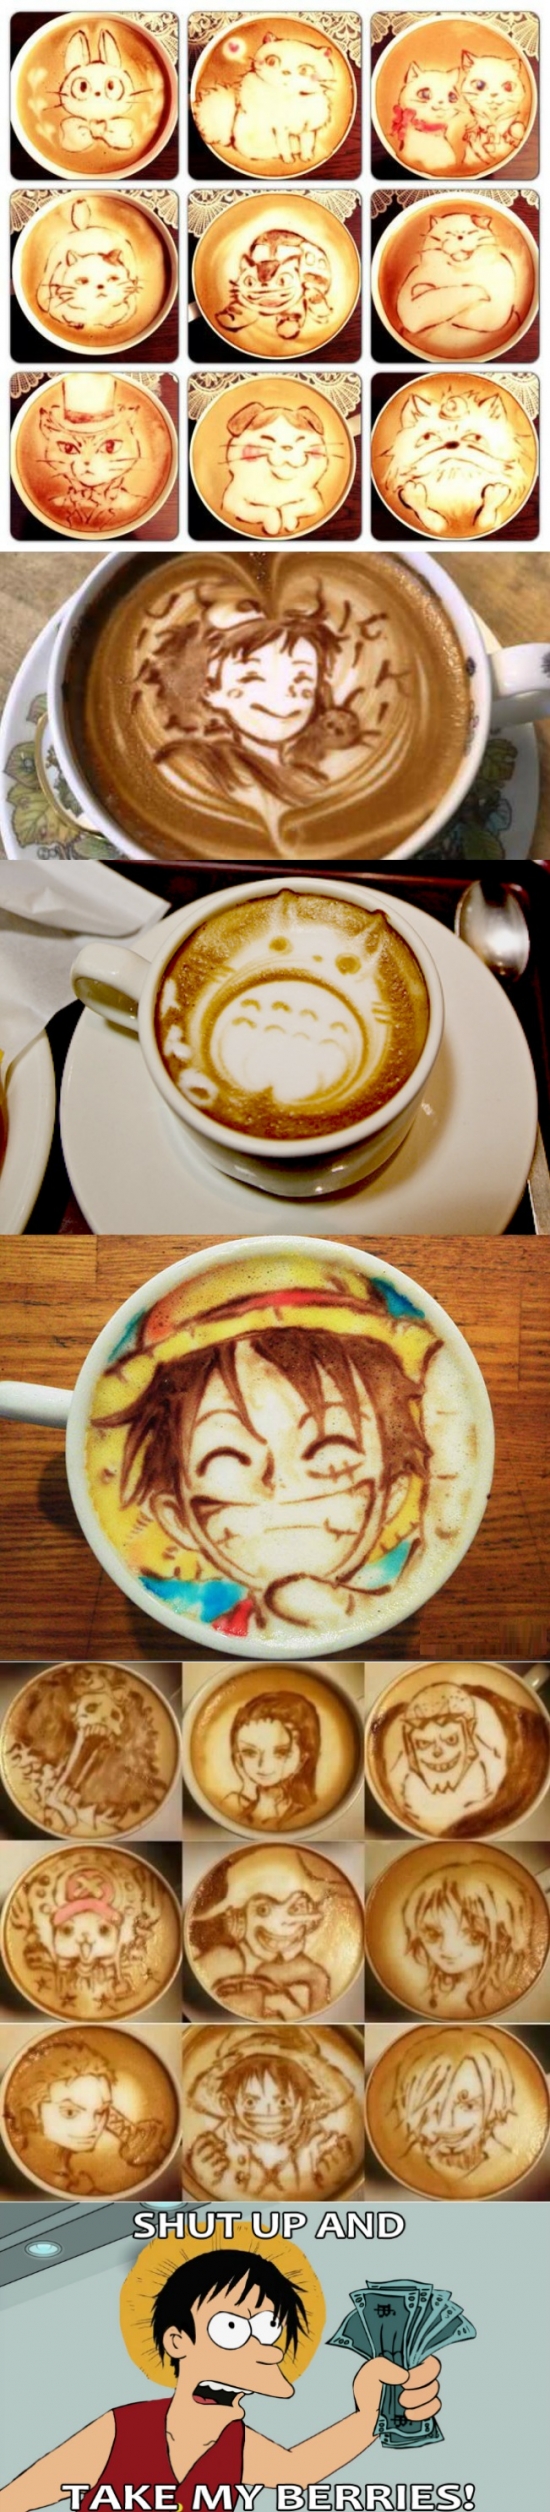 Anime,Café,Forma,Fry,One piece